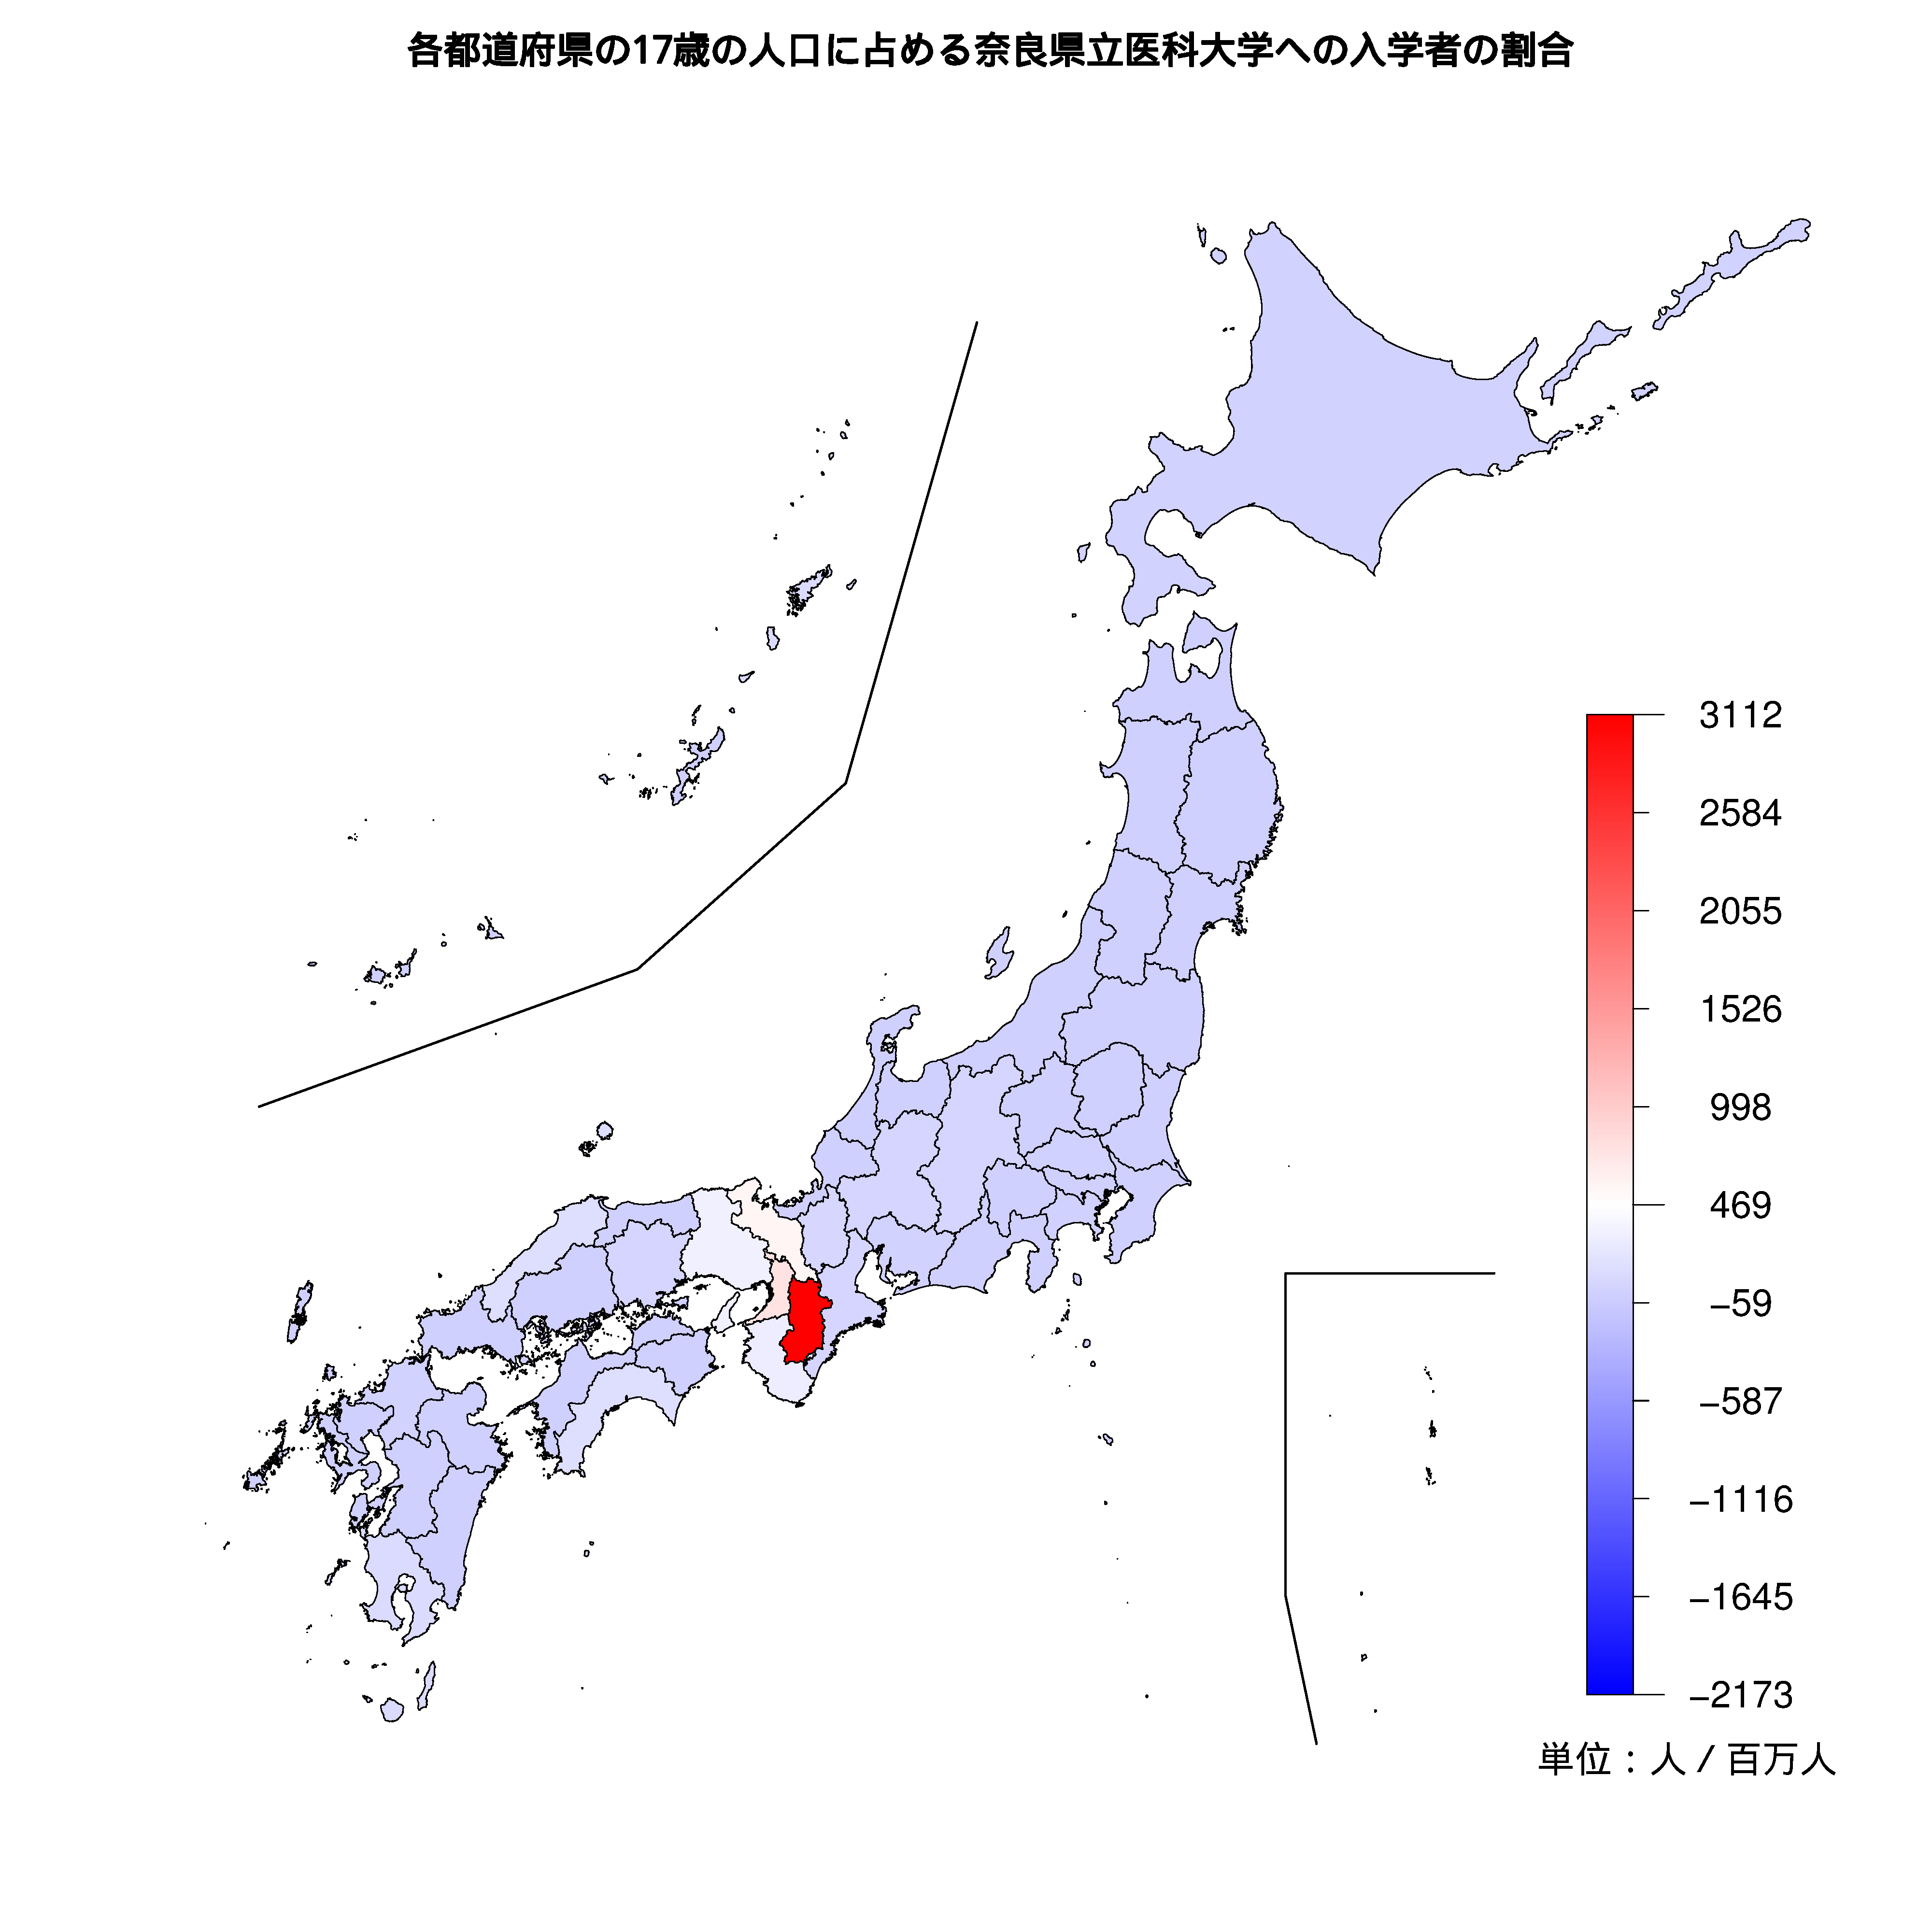 奈良県立医科大学への入学者が多い都道府県の色分け地図